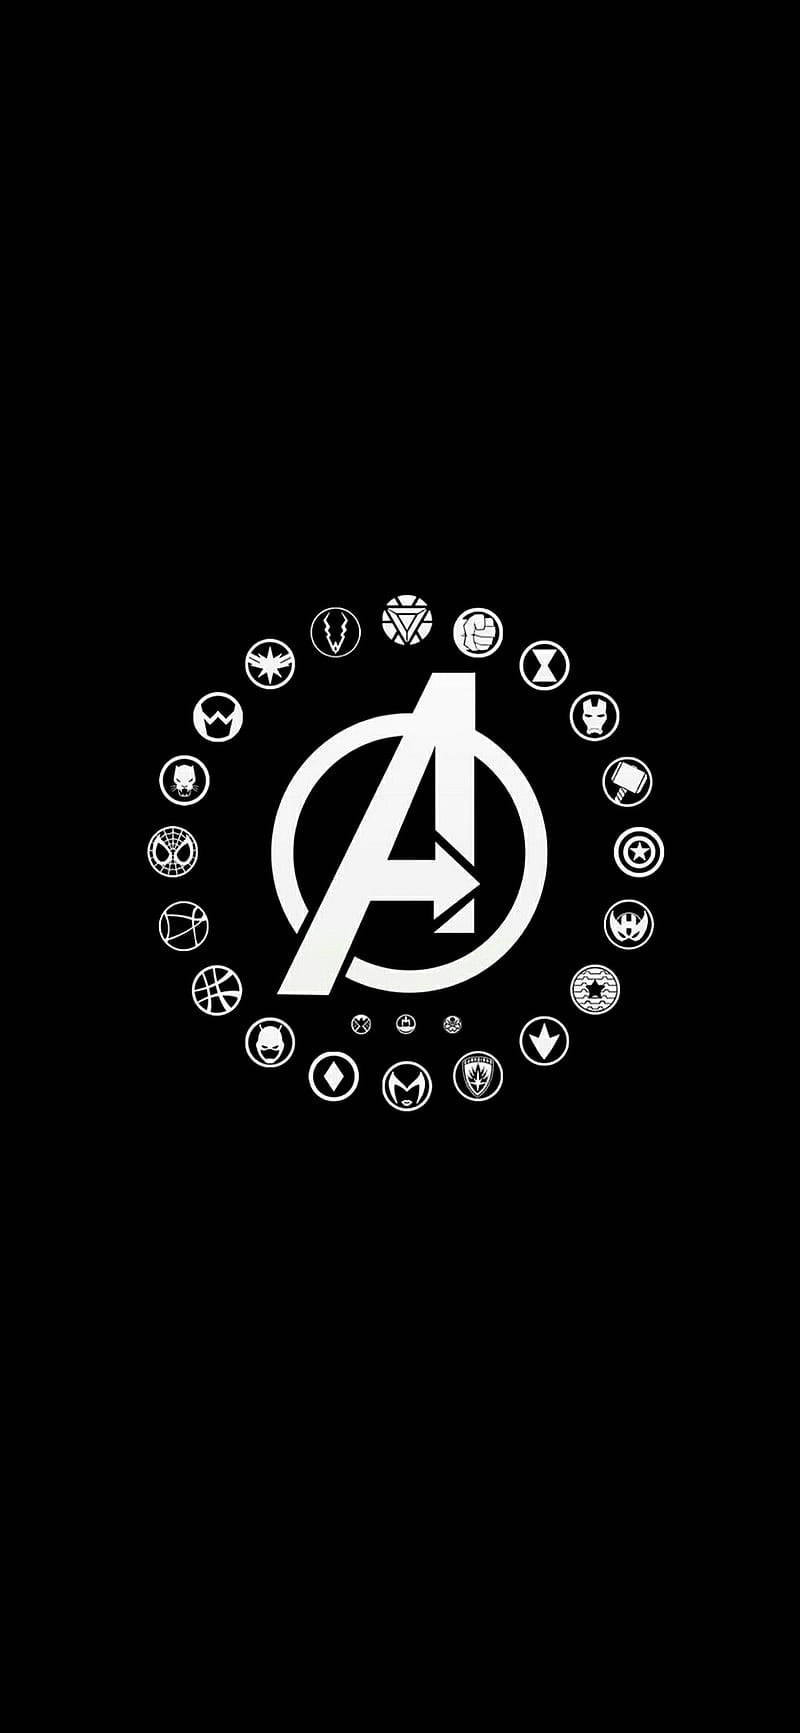 Avenger Hero Logos In Solid Black Background